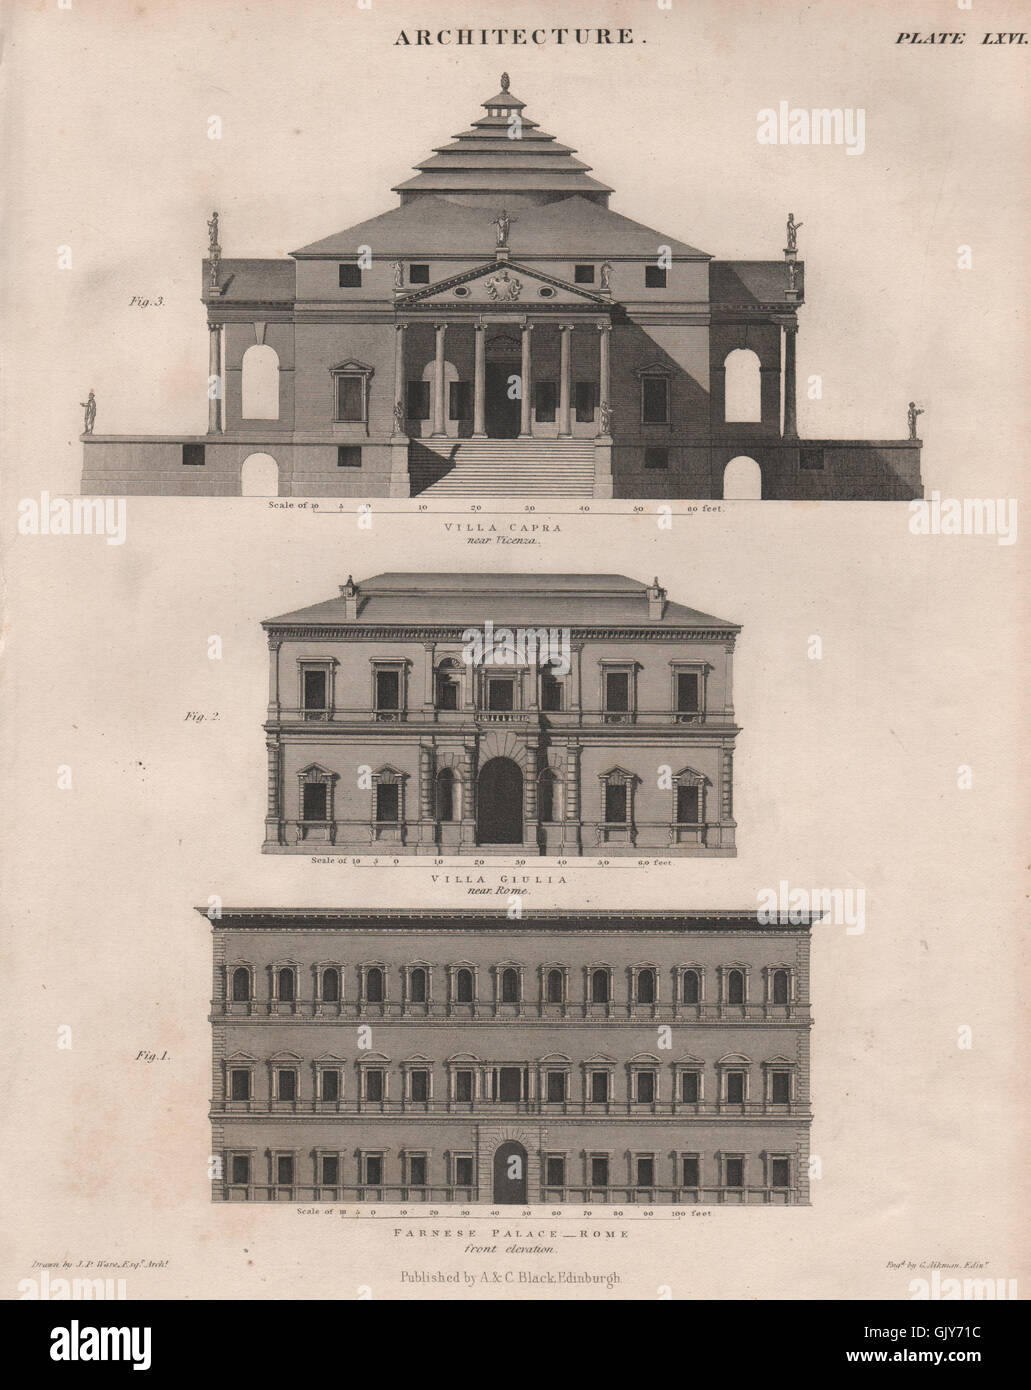 Architettura. Palazzo Farnese a Roma. Villa Giulia. Villa Capra, Vicenza, 1860 Foto Stock